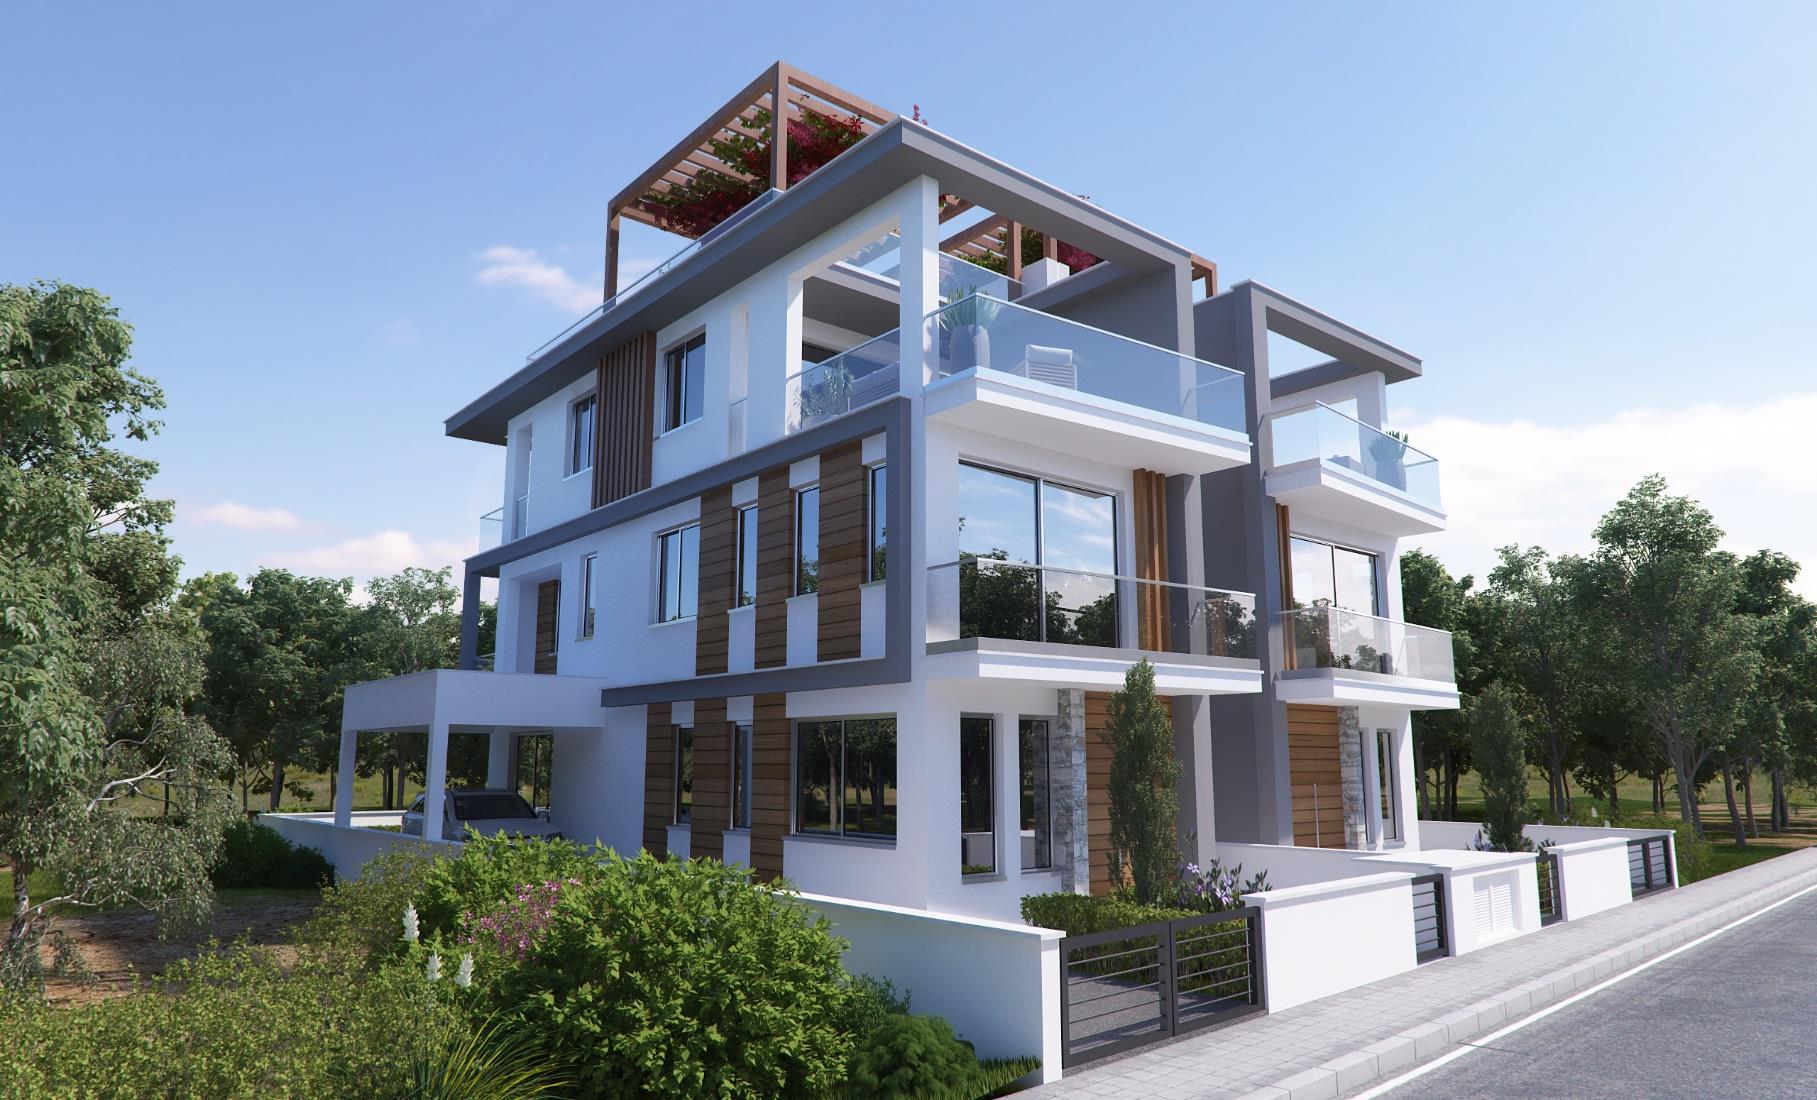 2 Houses Agios Athanasios Project (1)4